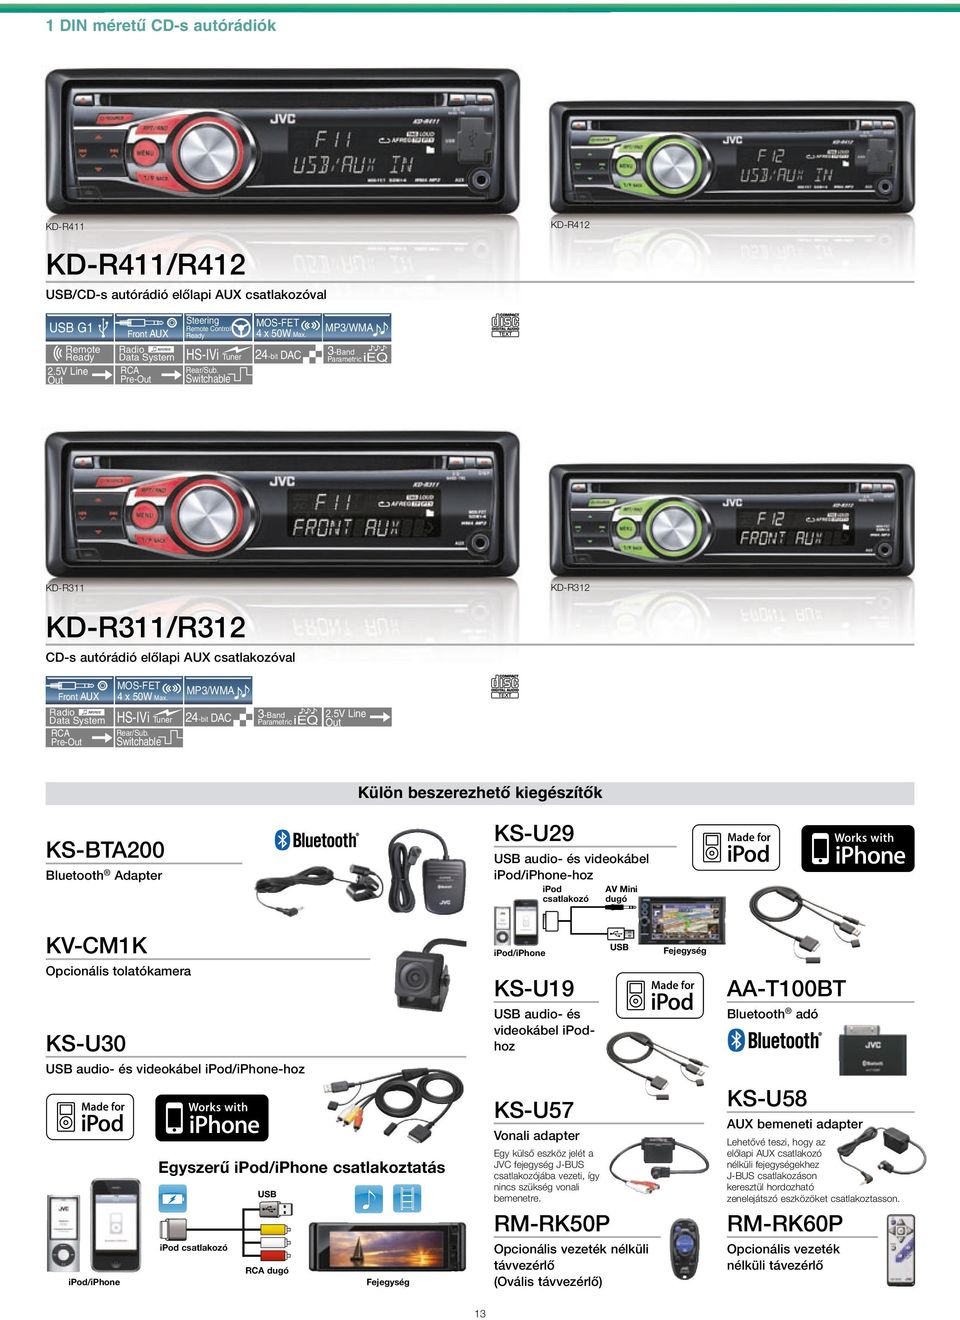 5V Line Külön beszerezhető kiegészítők KS-BTA200 Bluetooth Adapter KS-U29 audio- és videokábel ipod/iphone-hoz ipod csatlakozó AV Mini dugó KV-CM1K Opcionális tolatókamera KS-U30 audio- és videokábel